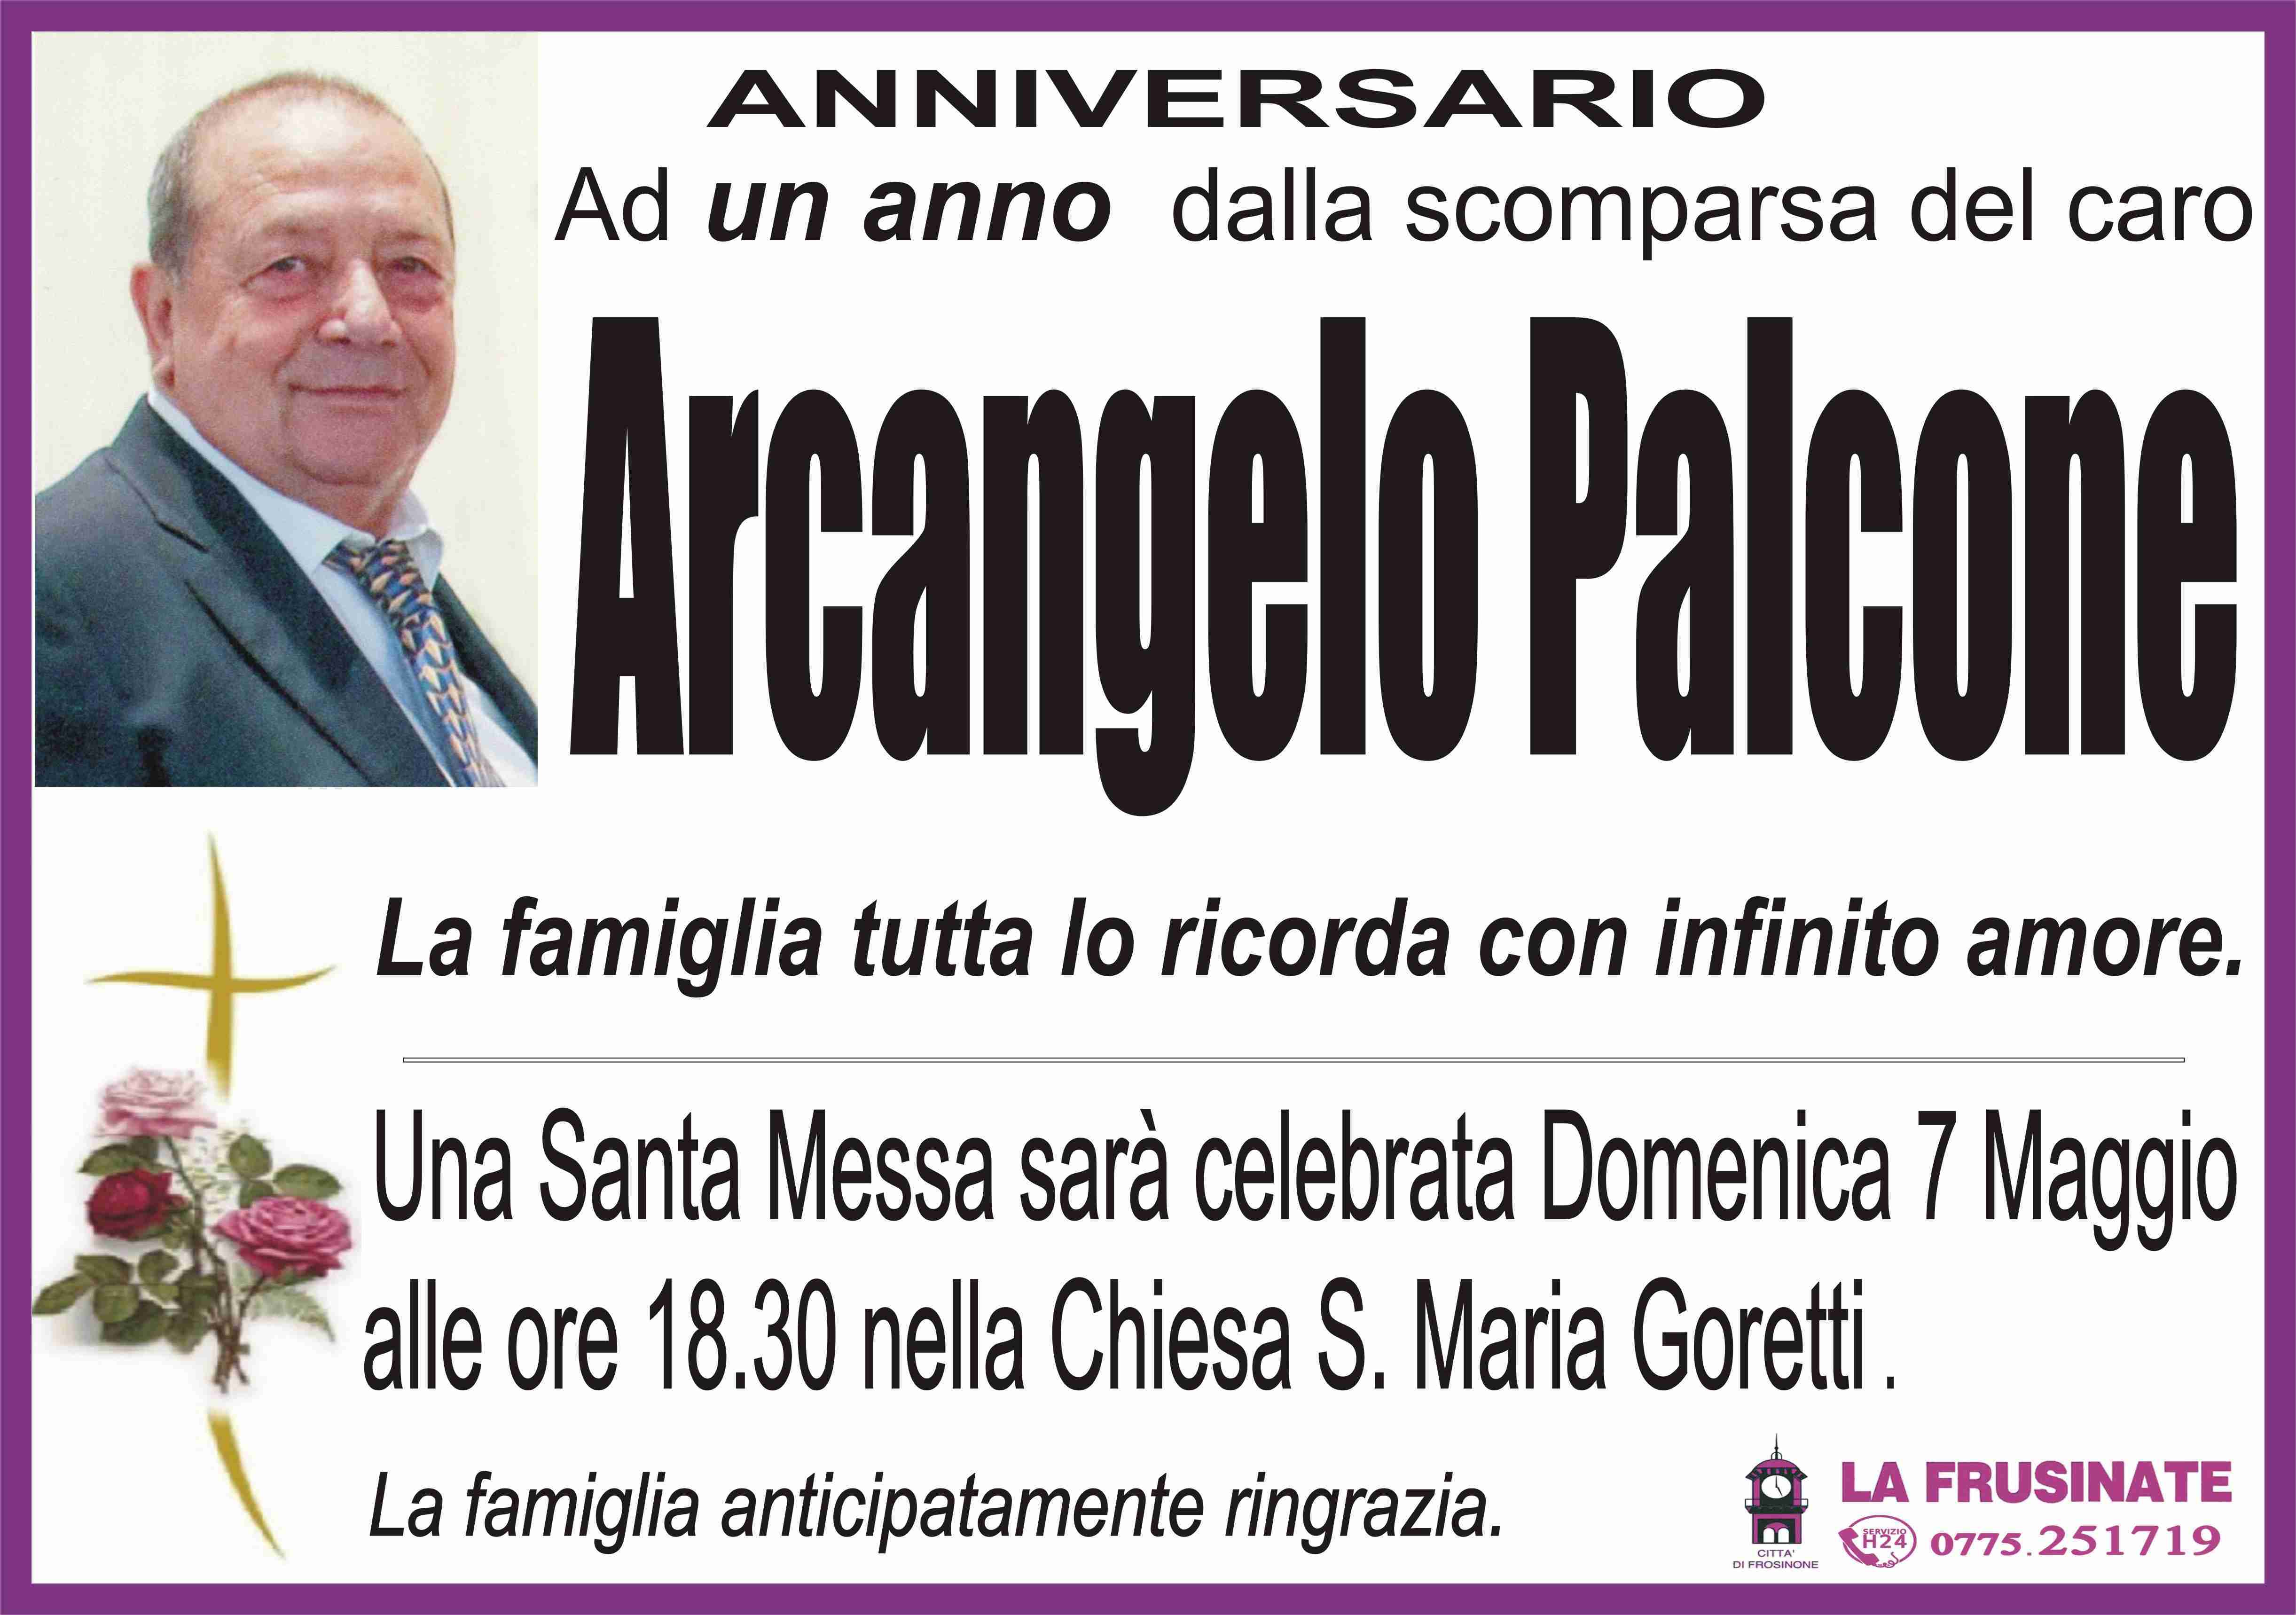 Arcangelo Palcone